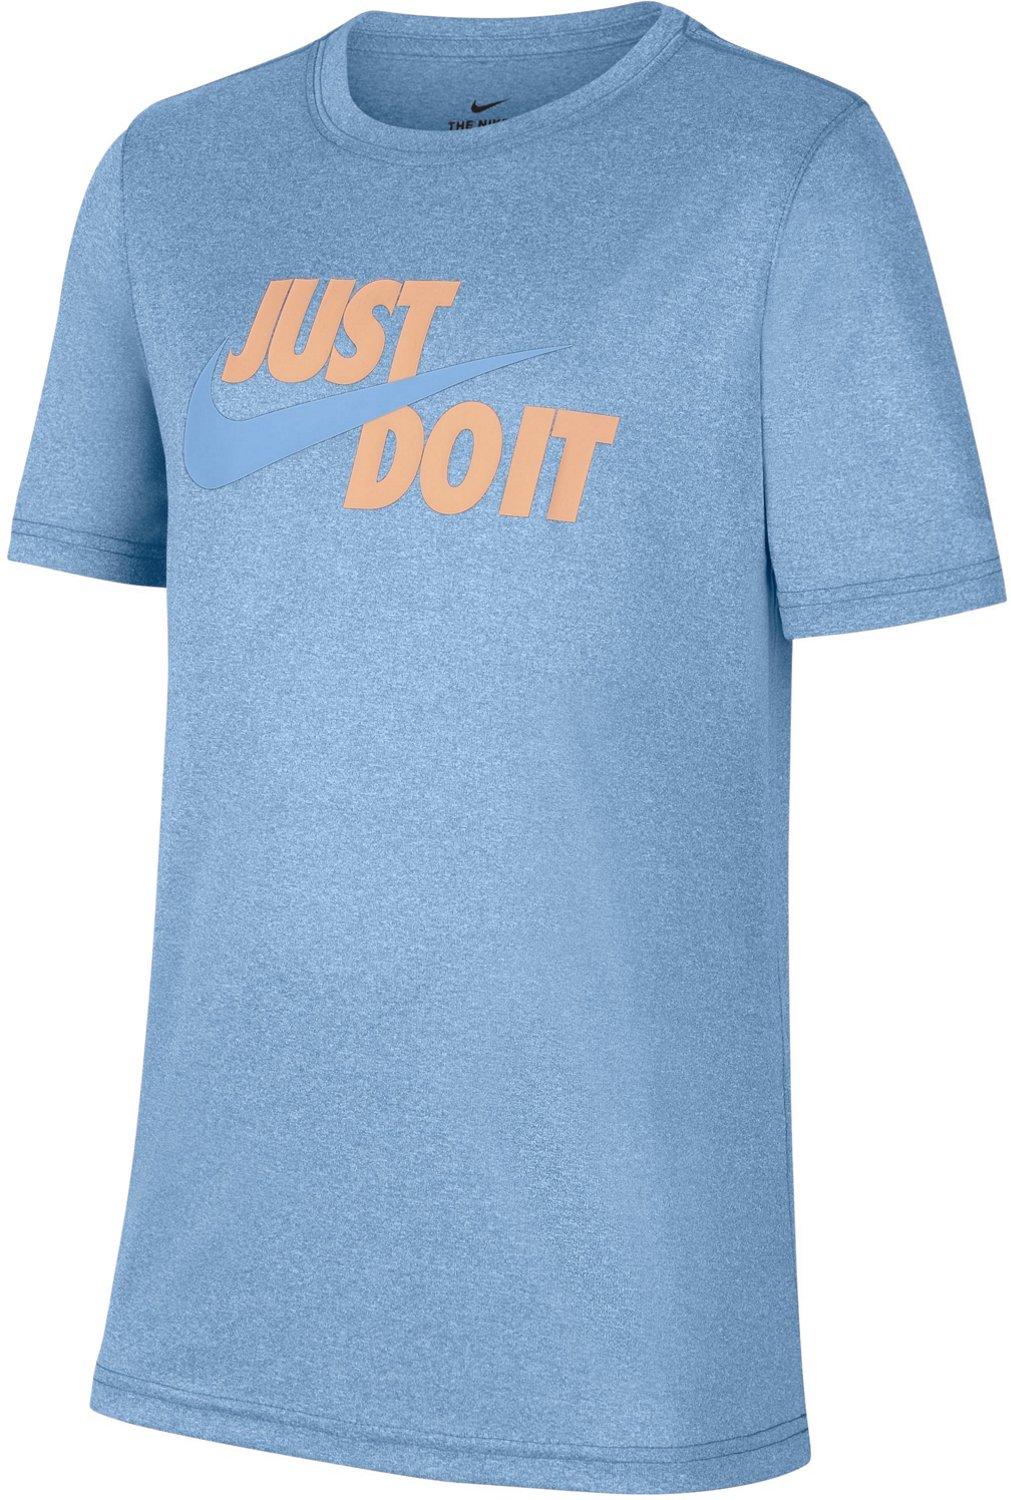 Nike Boys’ Dri-FIT JDI XDYE Graphic T-shirt | Academy